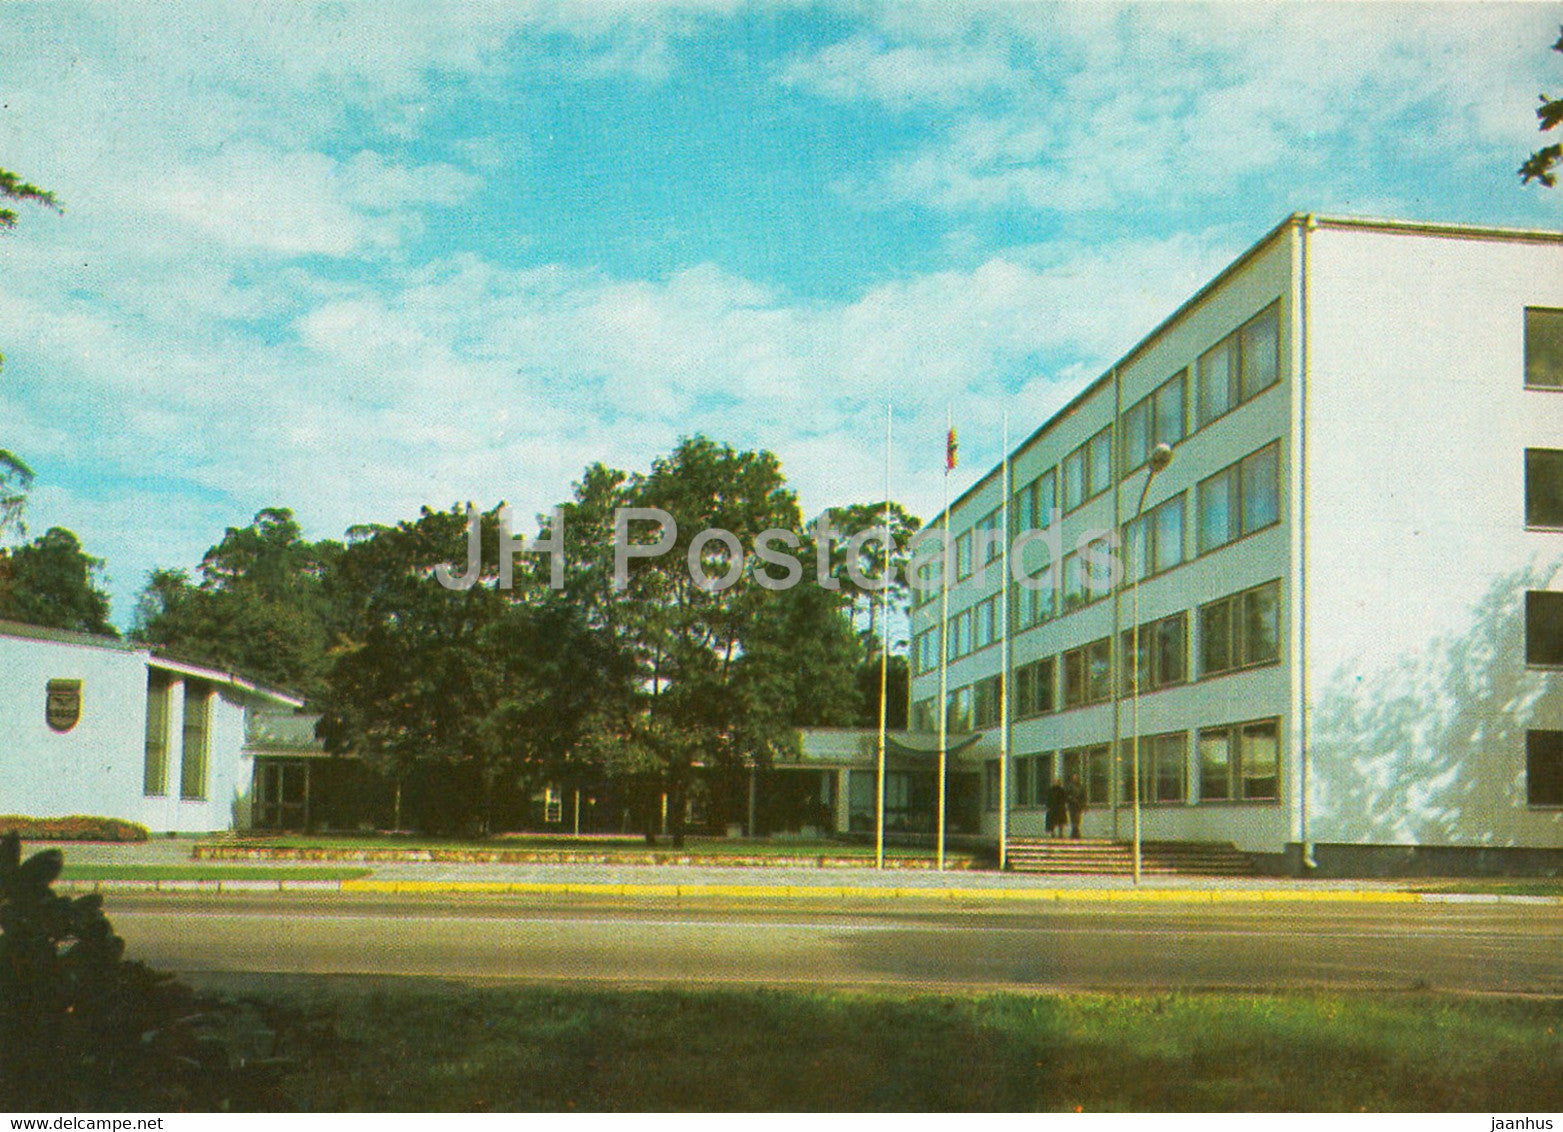 Jurmala - Executive Committee of People's Deputy Soviets at Majori - 1986 - Latvia USSR - unused - JH Postcards